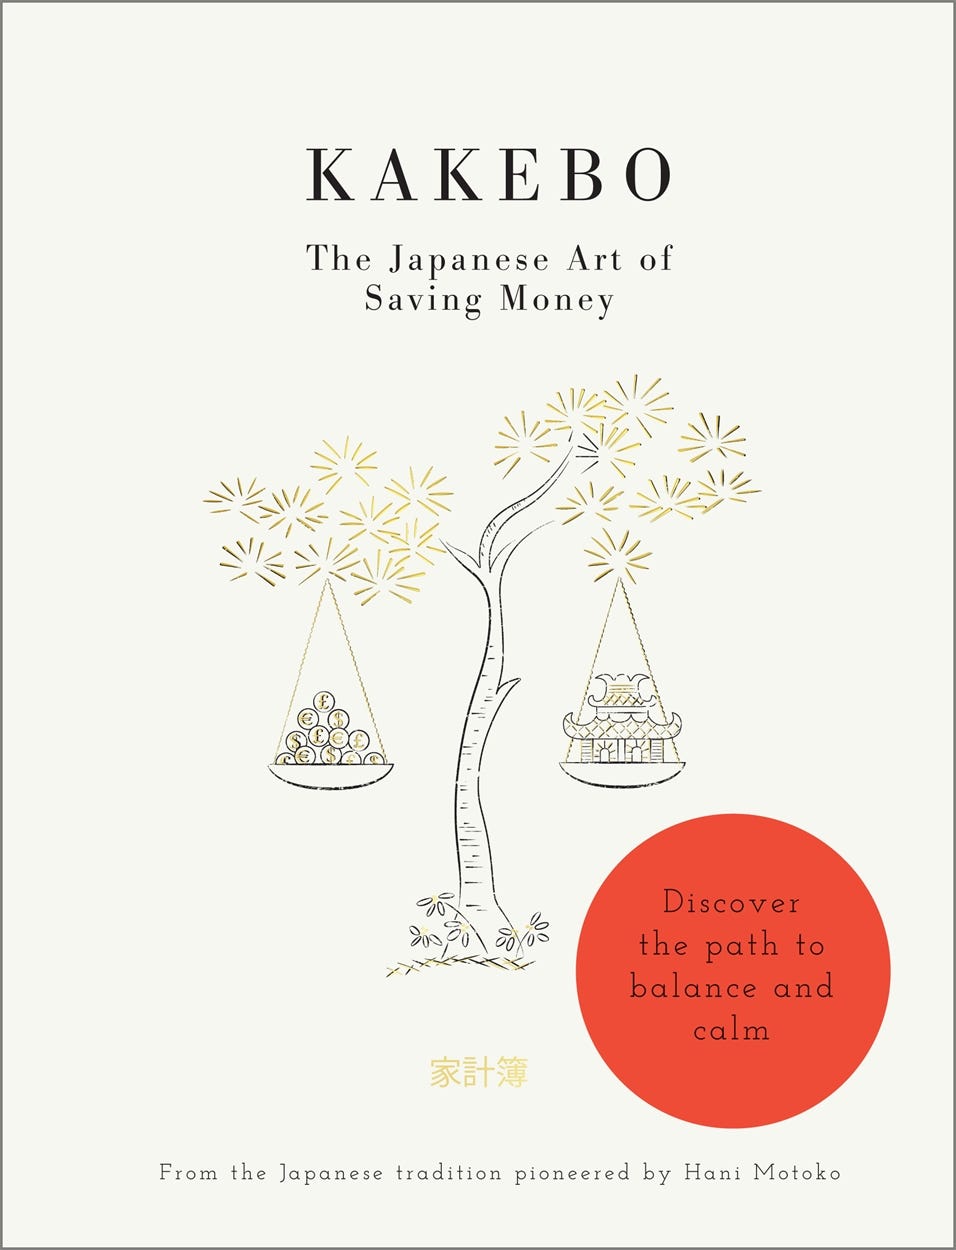 Kakeibo – The Japanese Budget Method Explained